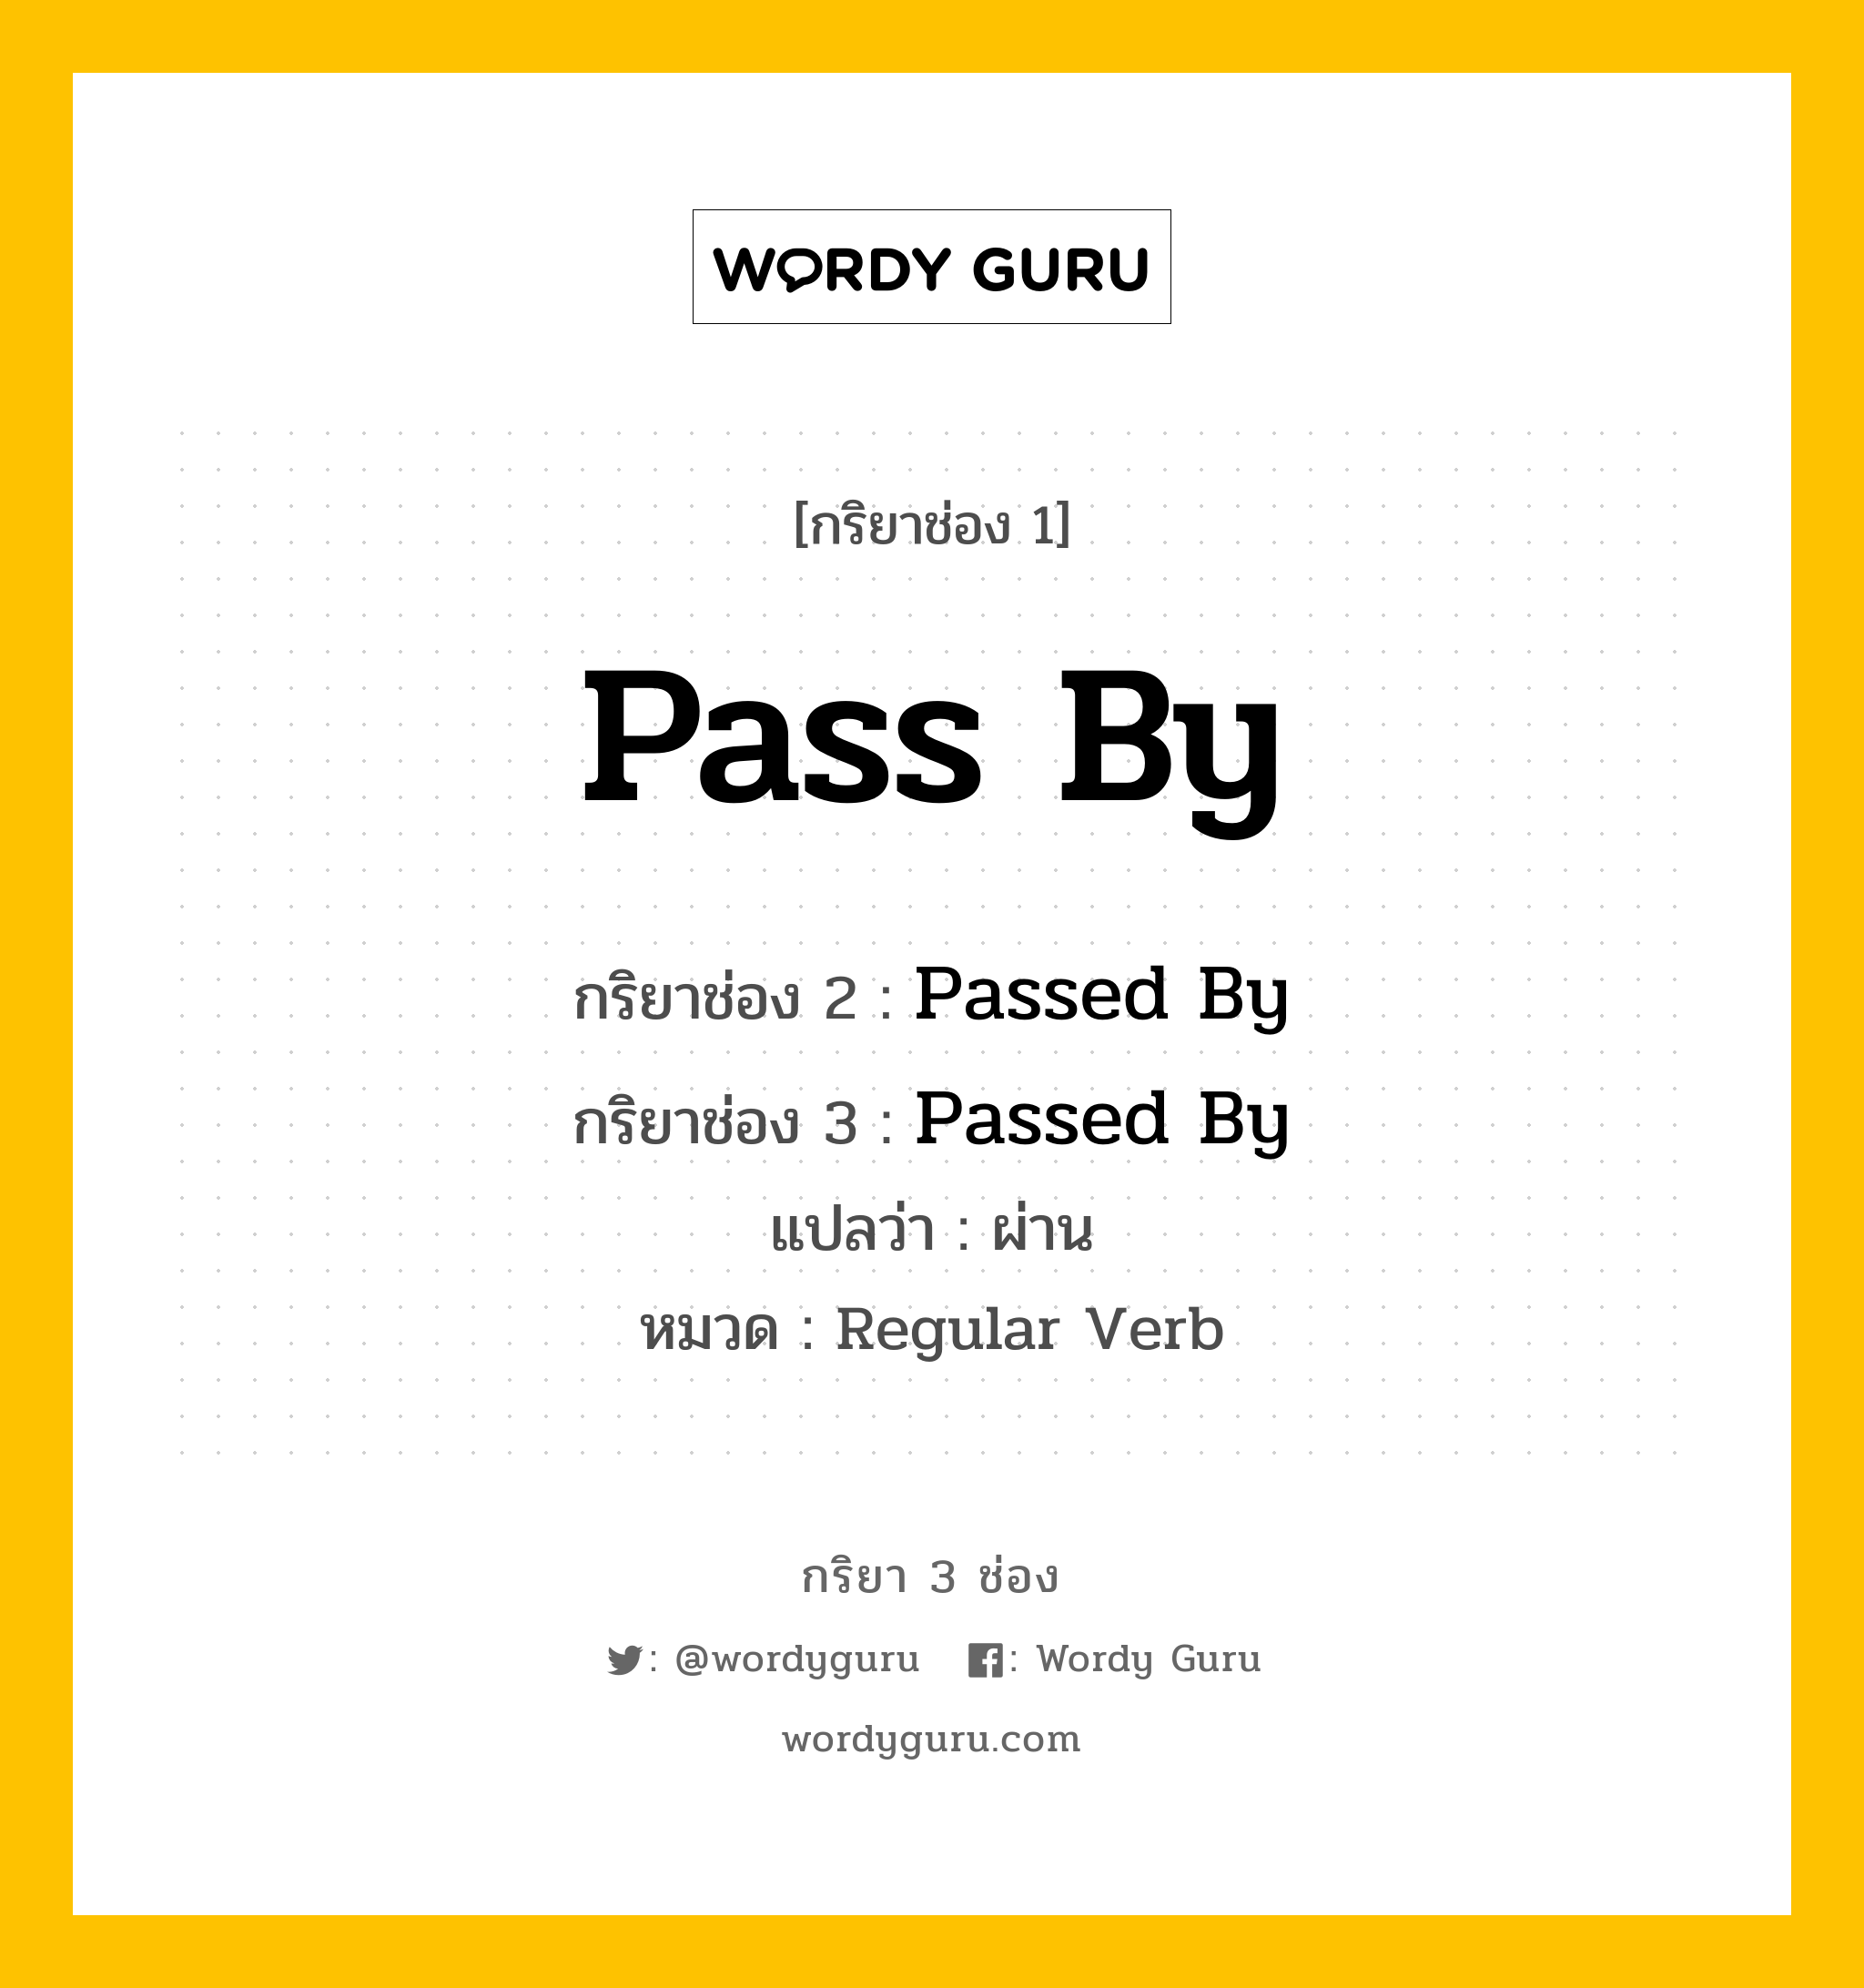 กริยา 3 ช่อง ของ Pass By คืออะไร? มาดูคำอ่าน คำแปลกันเลย, กริยาช่อง 1 Pass By กริยาช่อง 2 Passed By กริยาช่อง 3 Passed By แปลว่า ผ่าน หมวด Regular Verb หมวด Regular Verb